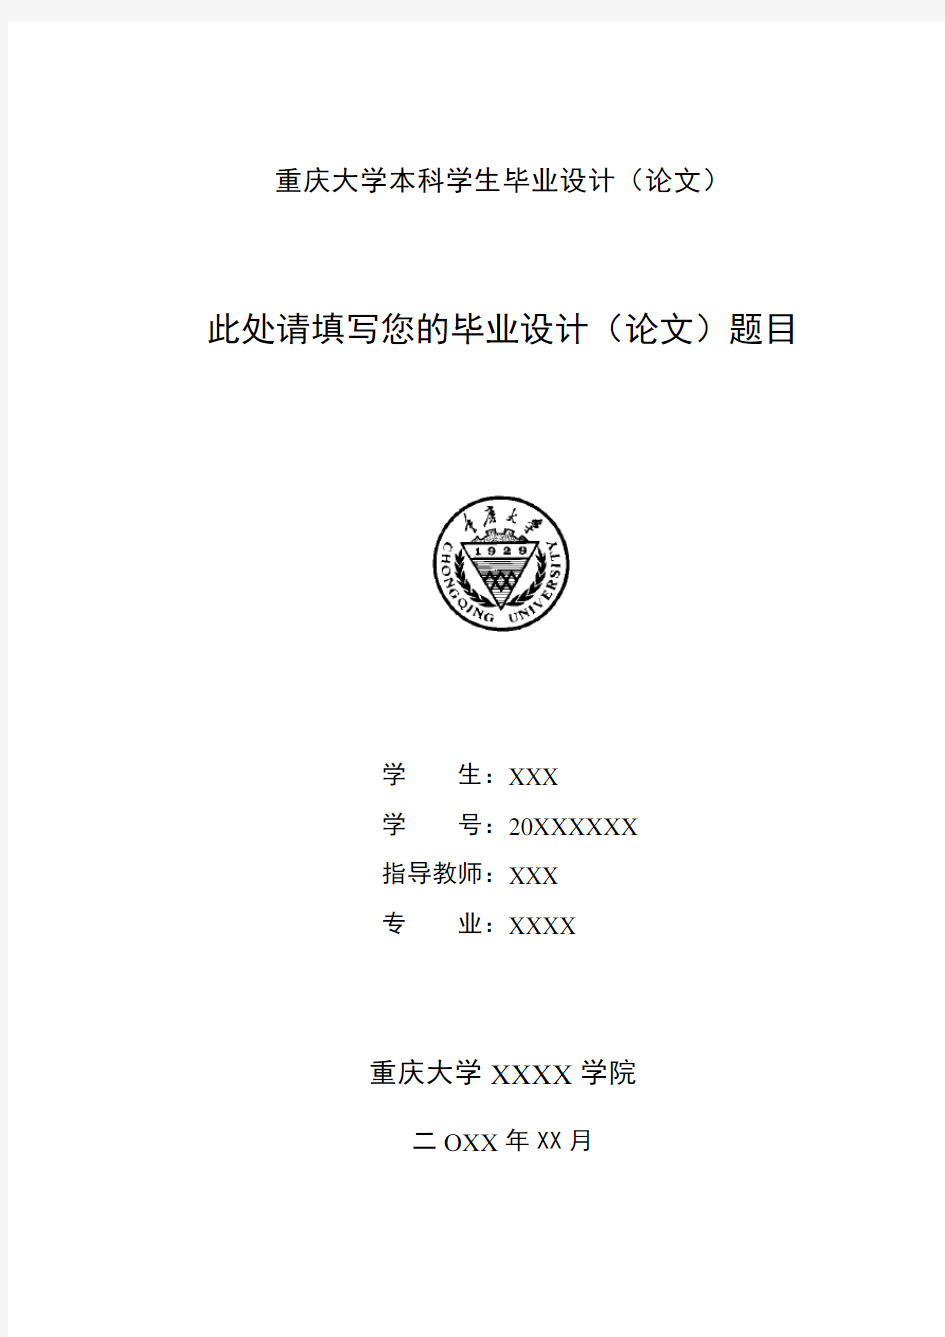 重庆大学本科毕业设计(论文)封面(中英文)